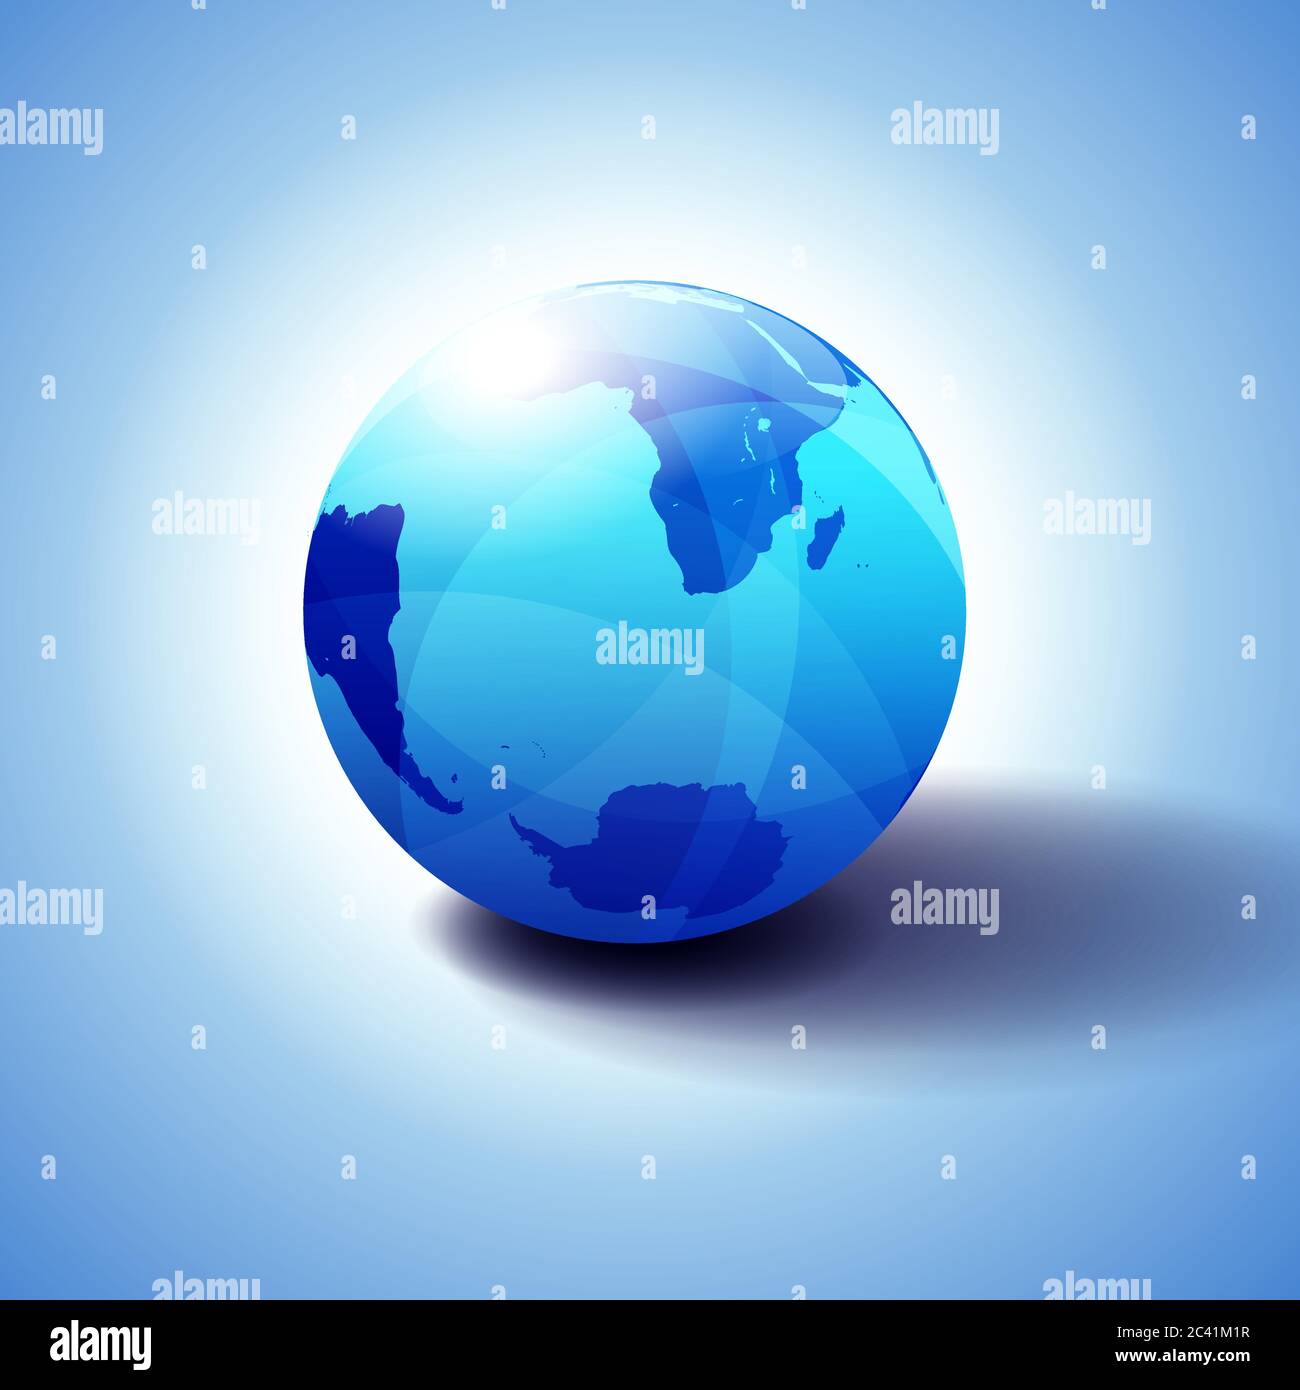 World Background South Pole et Afrique du Sud, Antarctique, monde mondial, Globe Icon illustration 3D, sphère brillante, brillante avec carte globale en bleu subtil Illustration de Vecteur